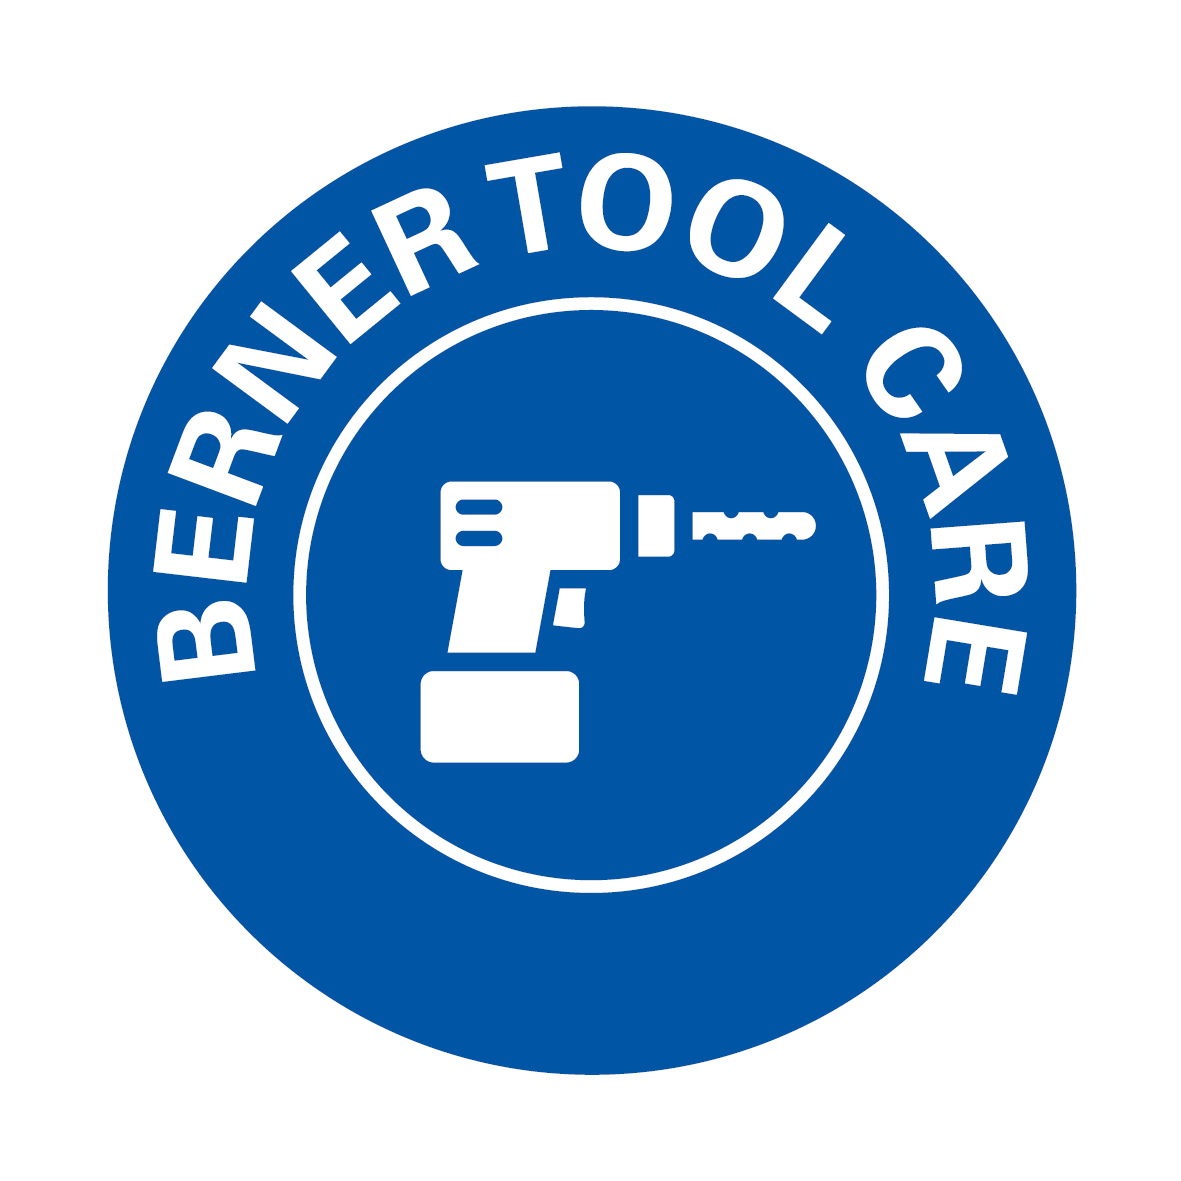 Berner Tool Care